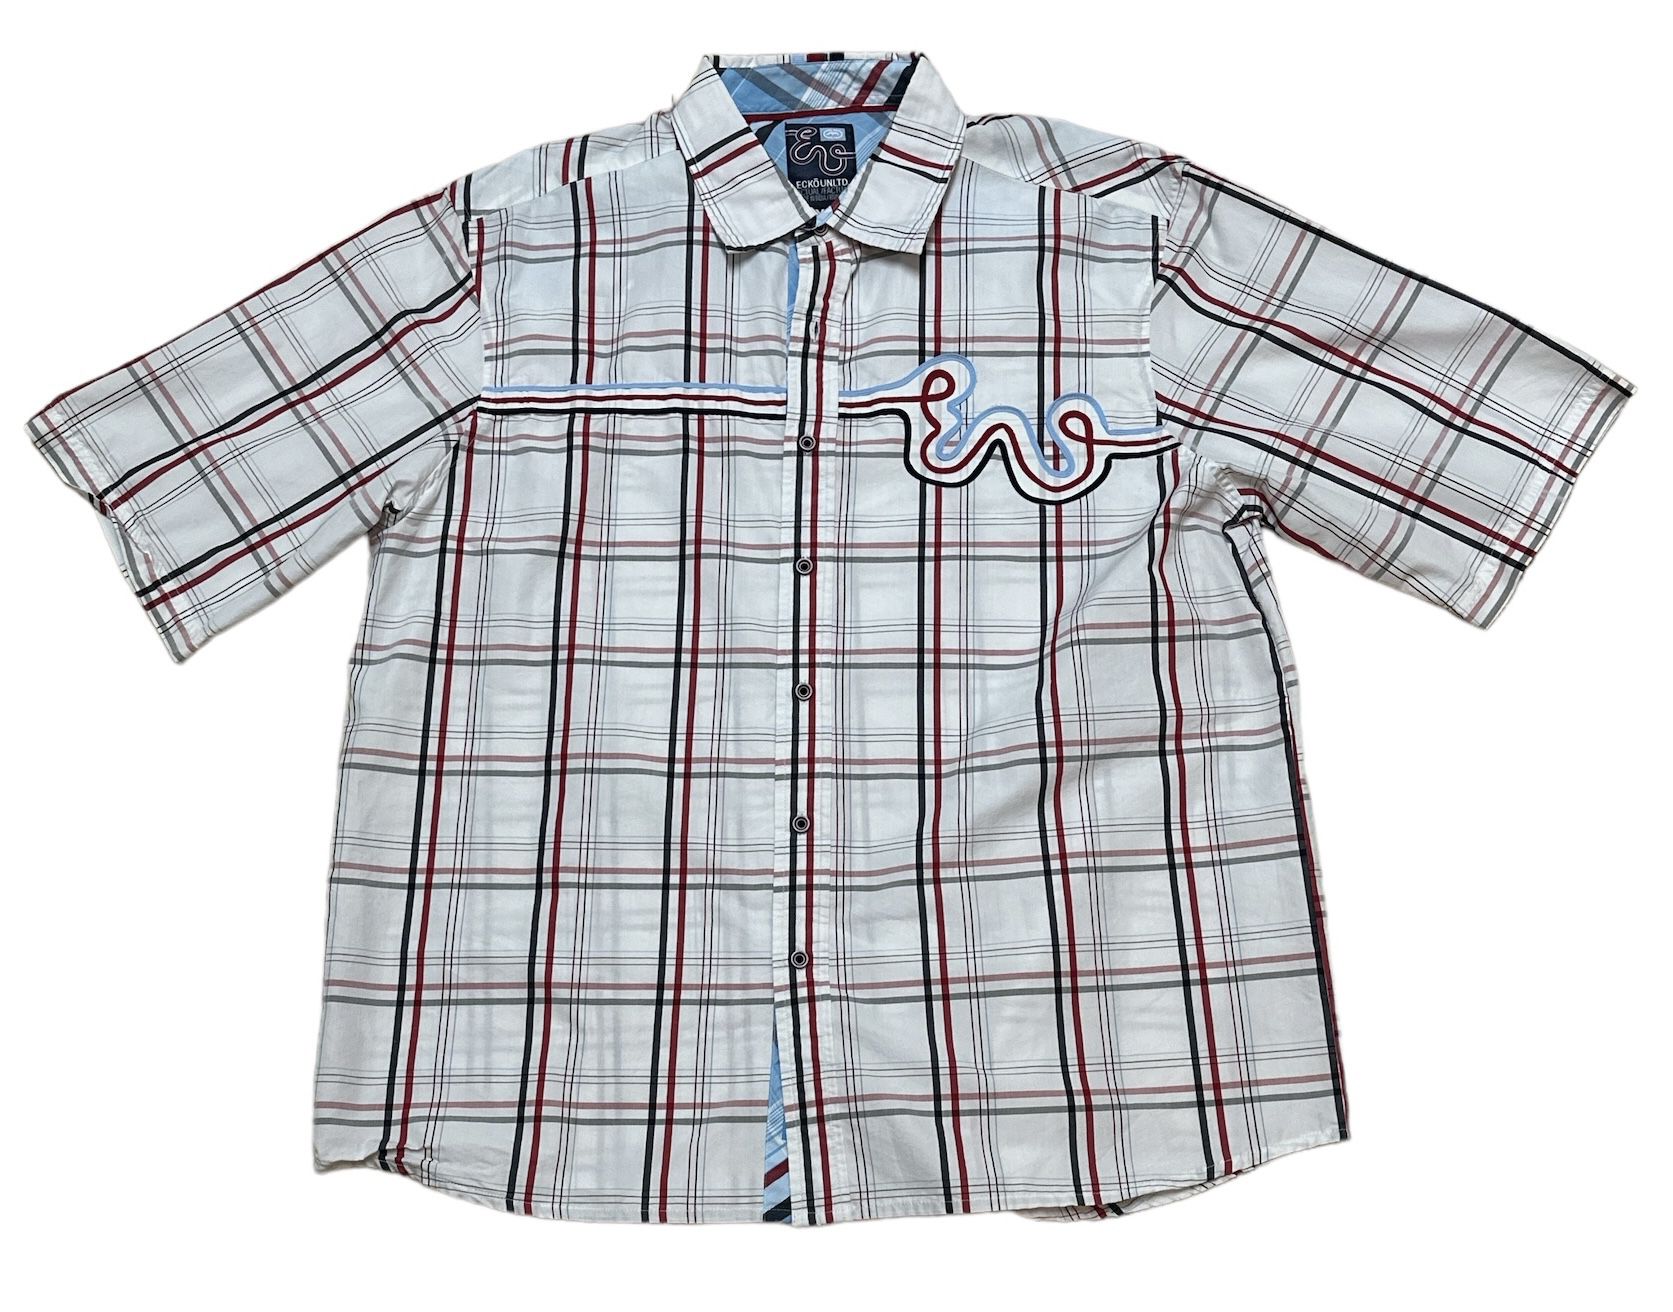 Vintage ECKO UNLTD Men’s Classic Casual White Red Blue Button Up Shirt Size XL